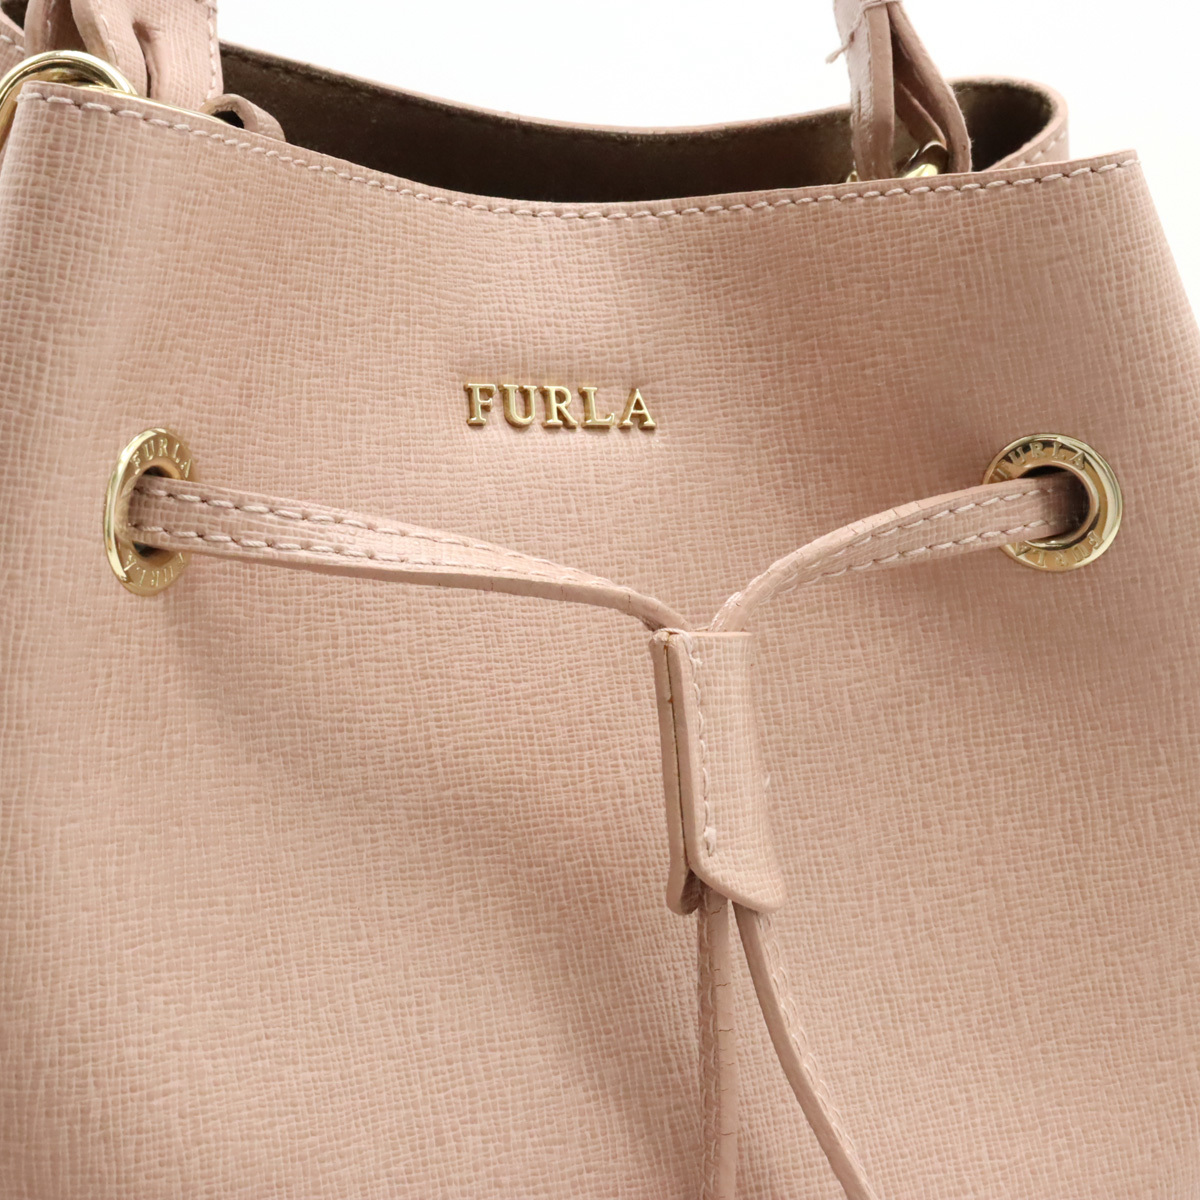 FURLA   полный ...  дамская сумка   2WAY  наплечная сумка  ... ... модель    кожа  ... розовый   золотой  металлическая арматура 